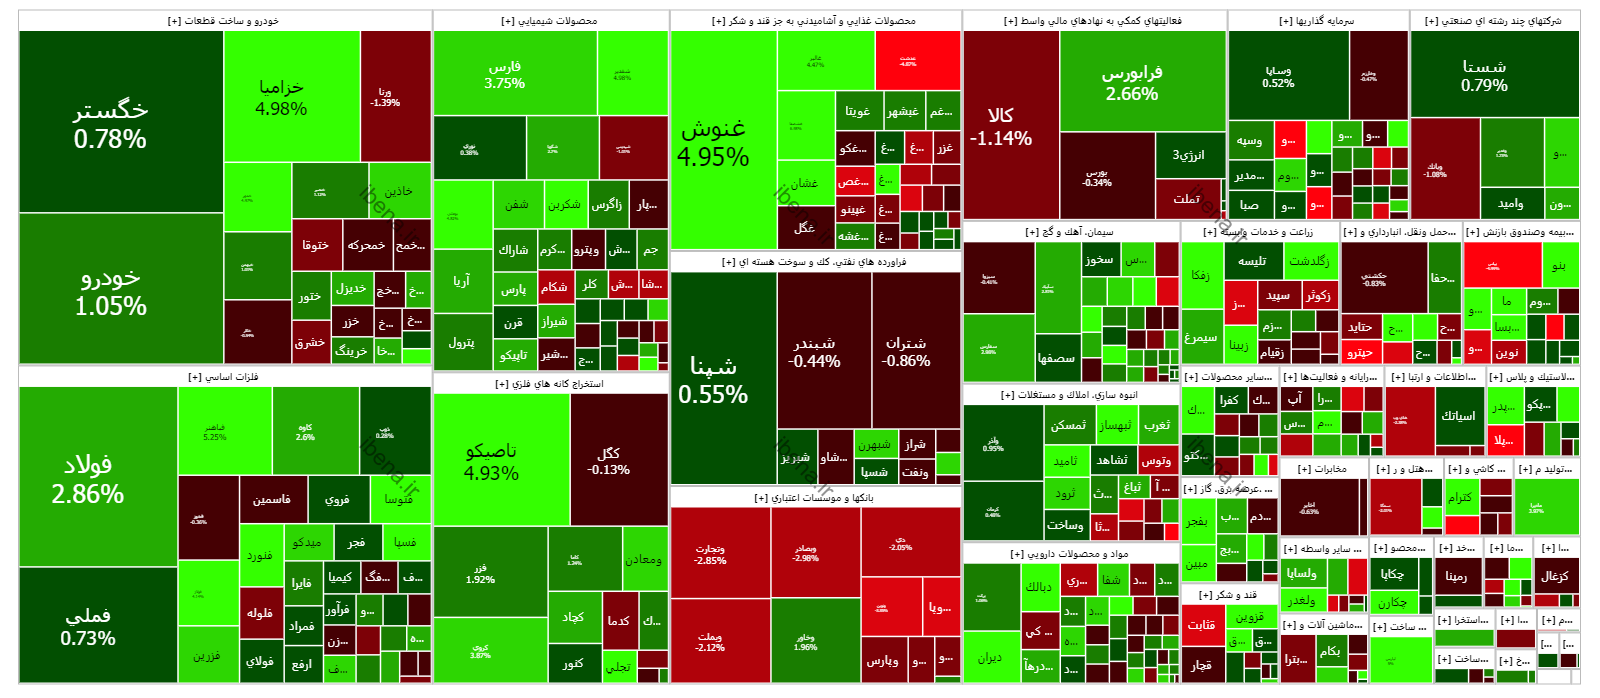 شتاب شاخص کل بازار سهام در آخرین روز معاملاتی هفته + نمودار + نقشه